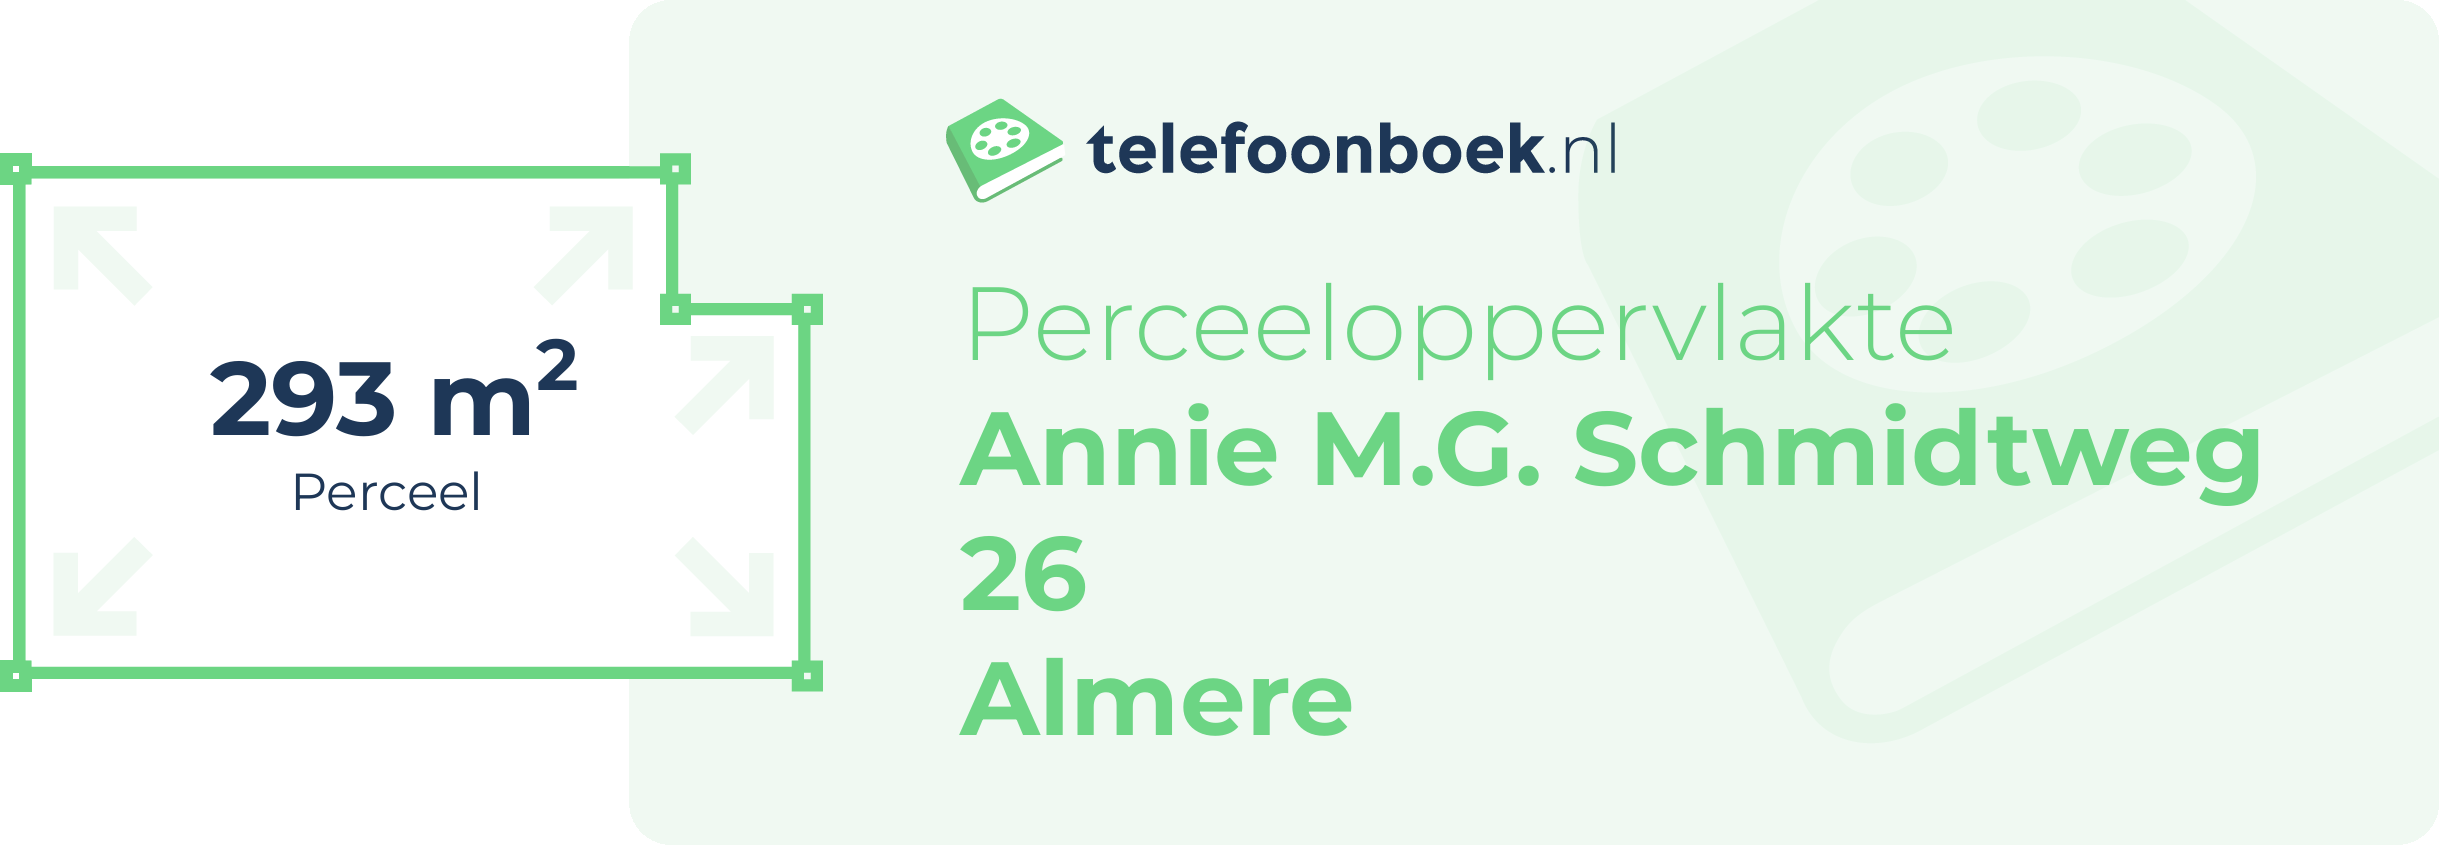 Perceeloppervlakte Annie M.G. Schmidtweg 26 Almere